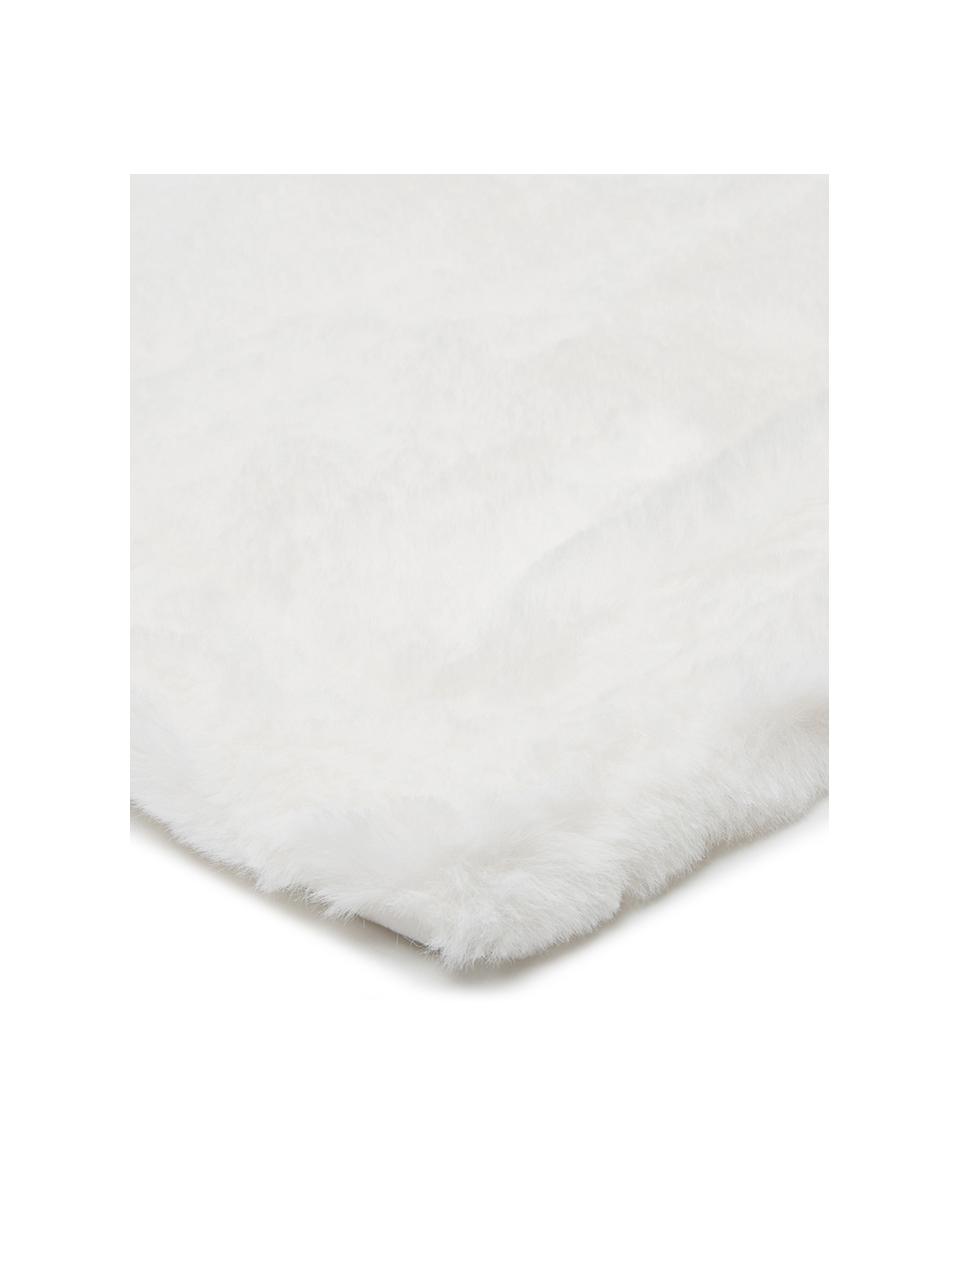 Puszysty koc ze sztucznego futra Mette, Biały, S 150 x D 200 cm